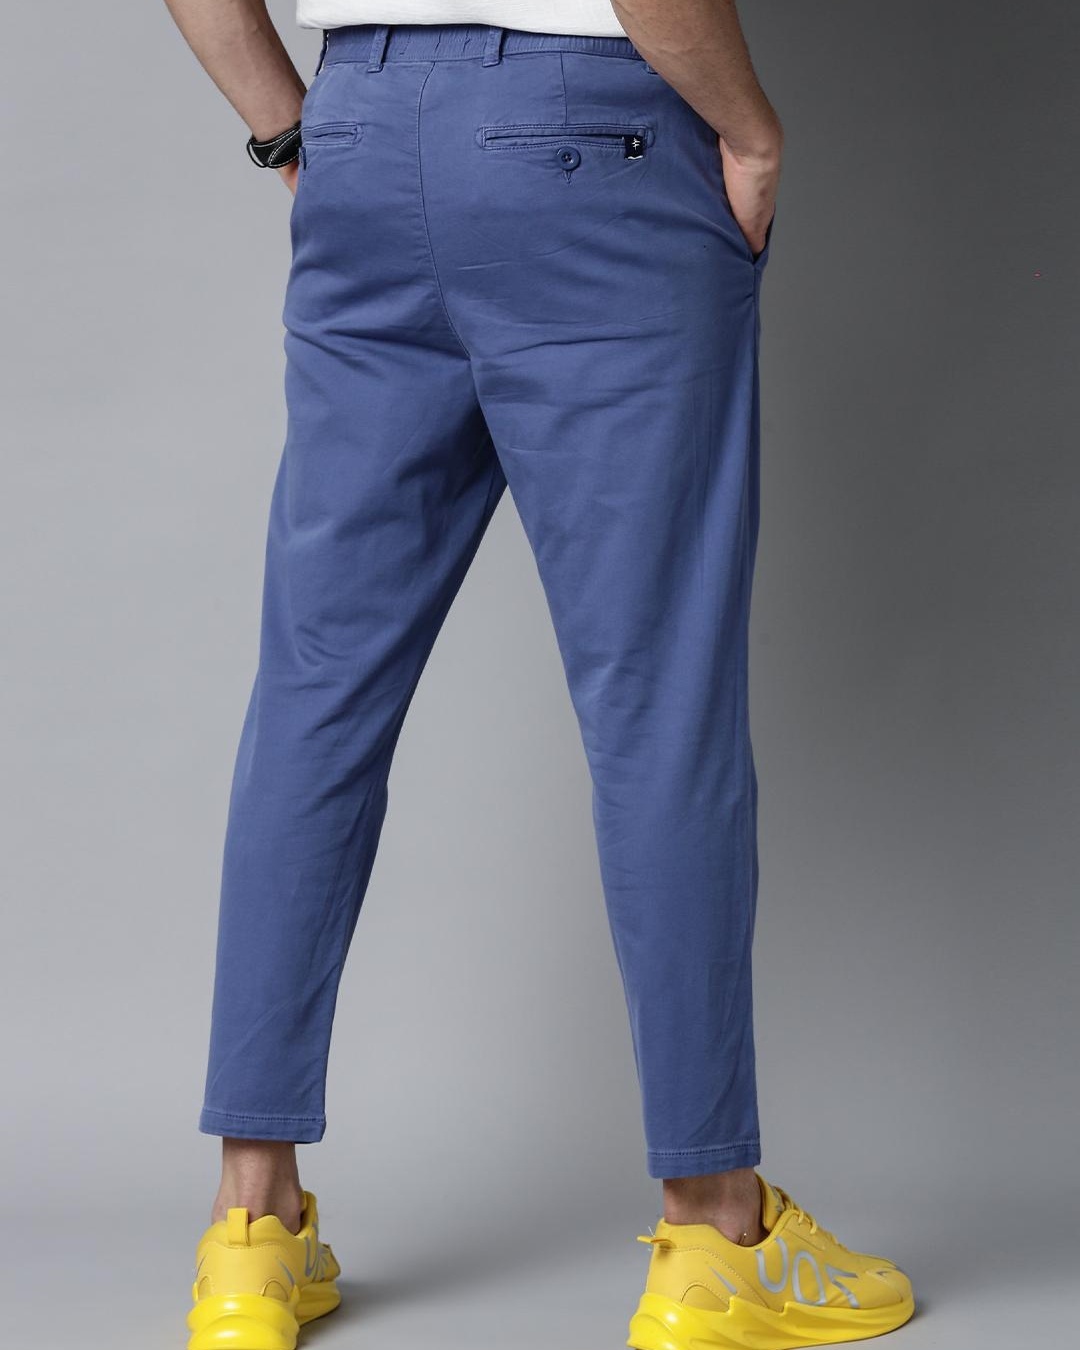 Shop Men's Blue Trousers